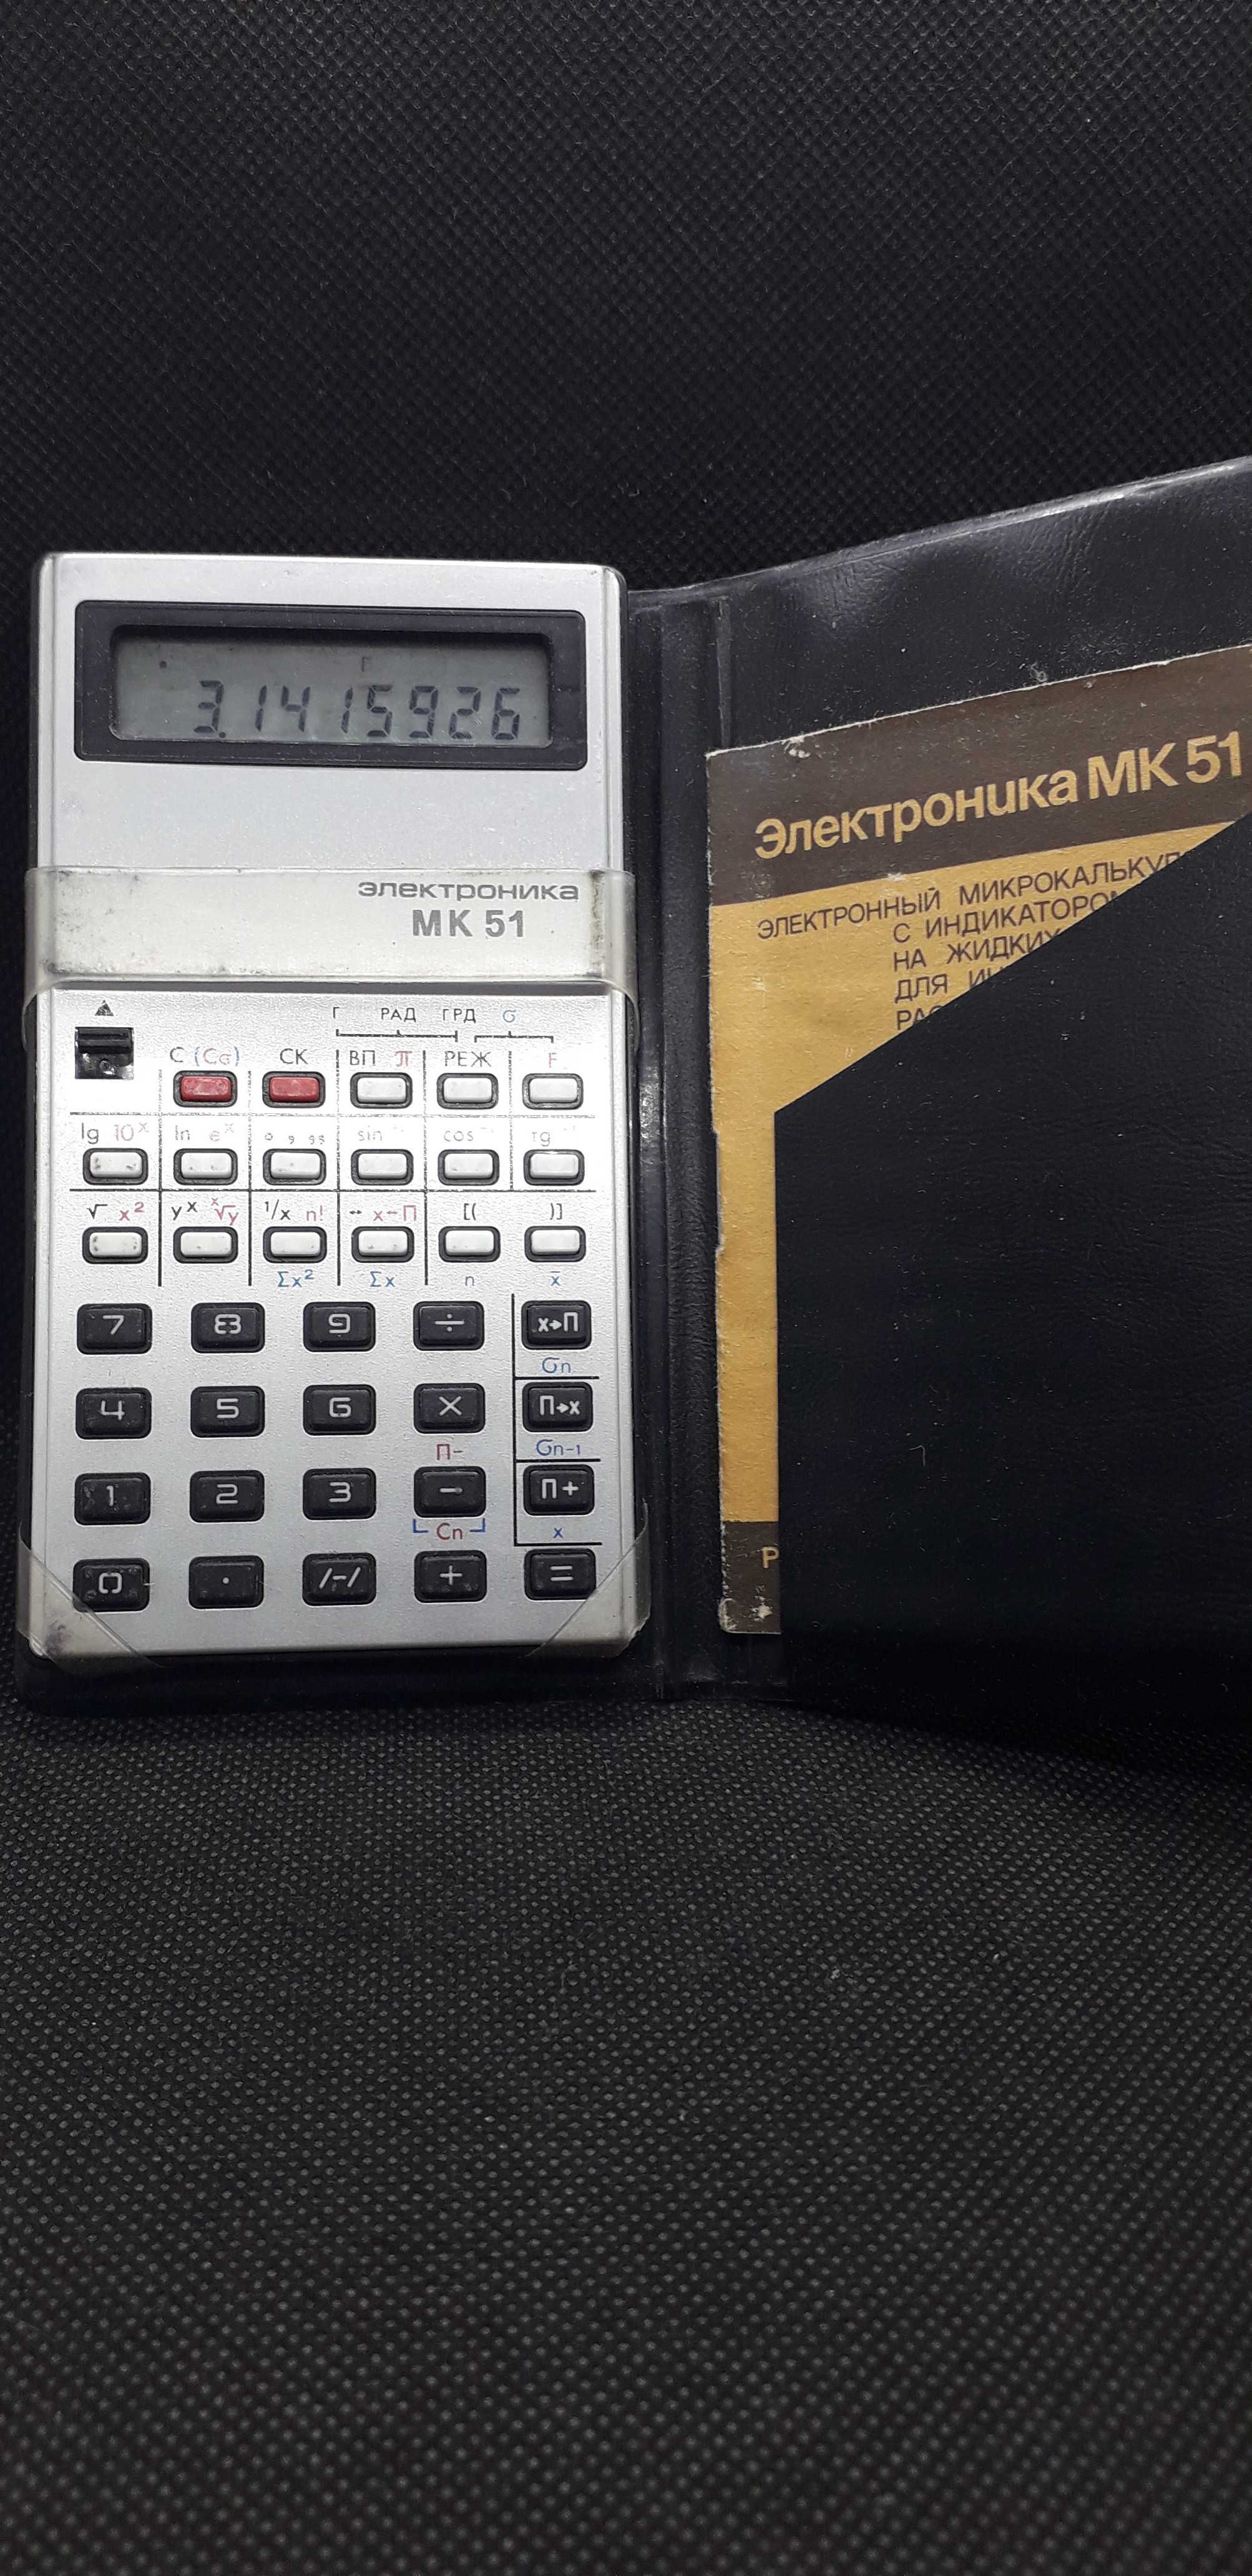 Калькулятор Электроника МК 51